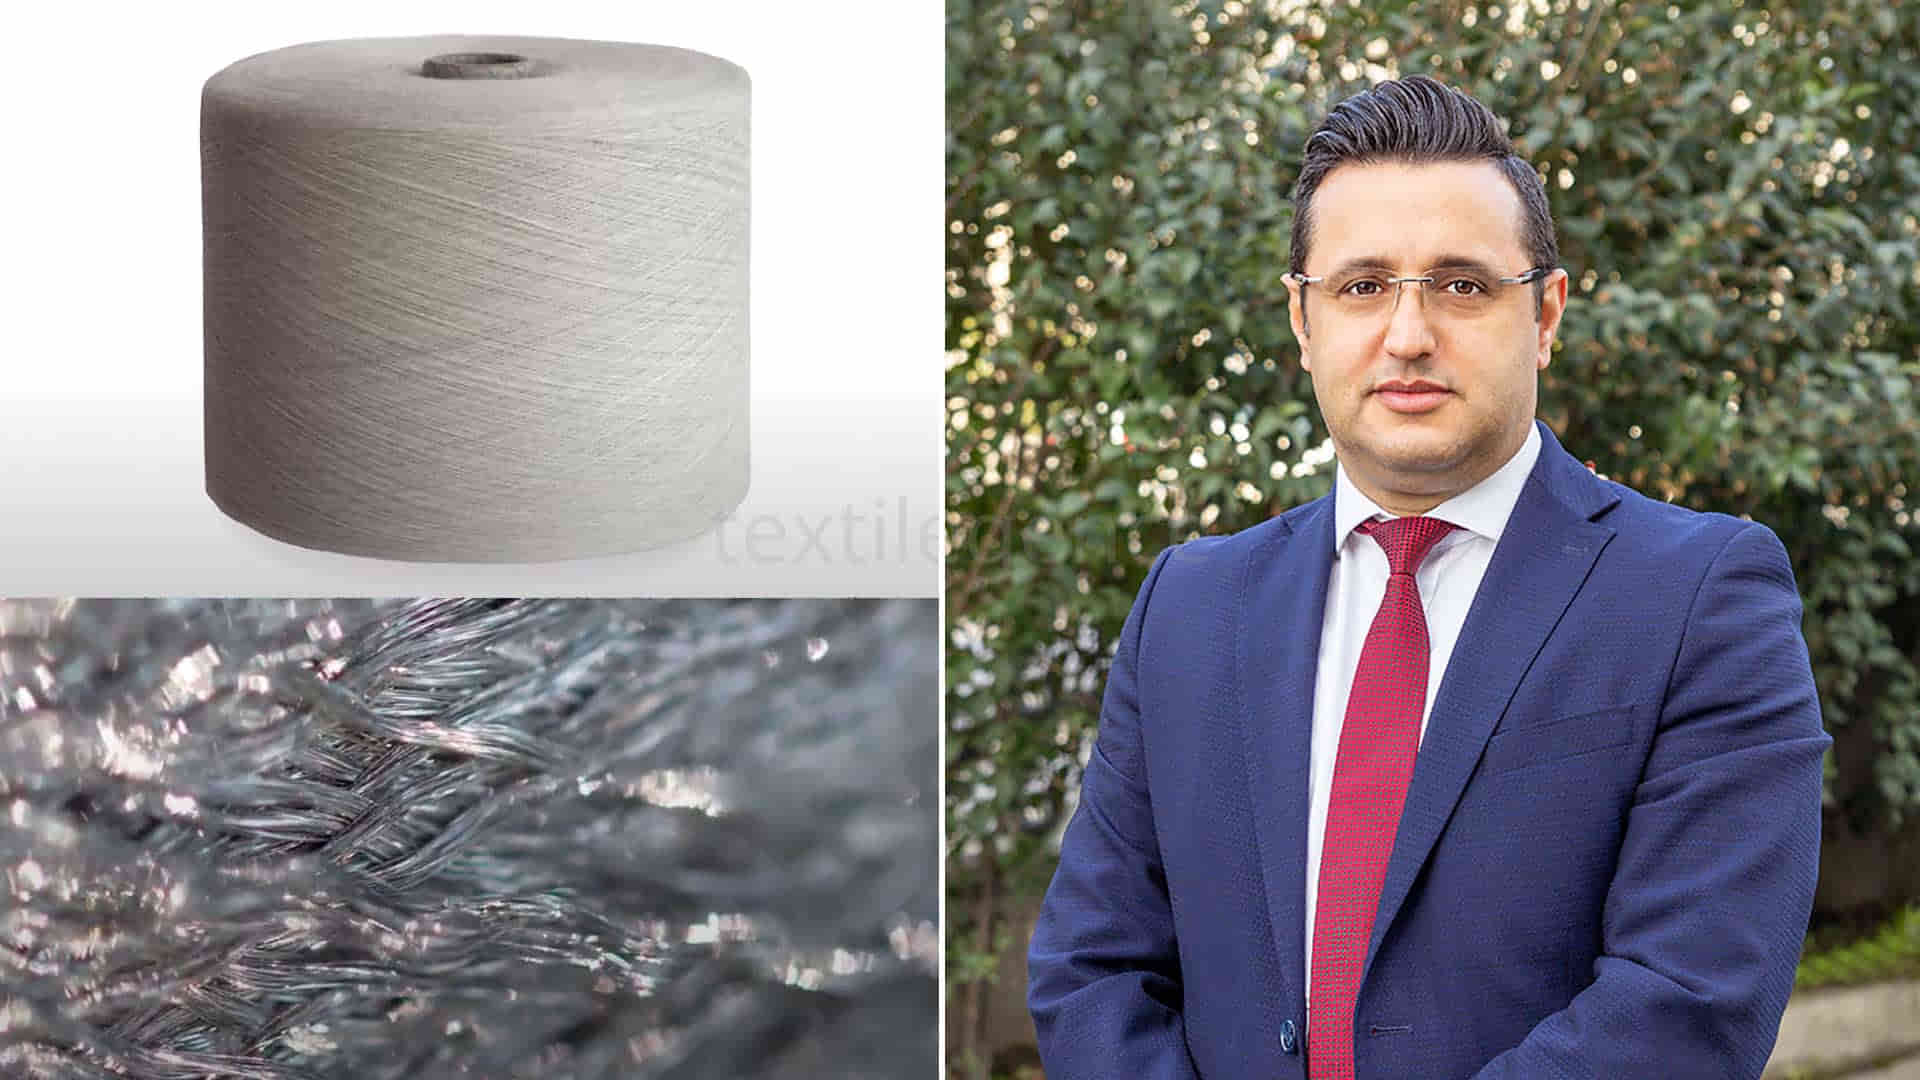 Teksel Tekstil A.Ş.’nin Genel Müdürü Dursun Ferikel   Görsel Kaynak: Teksel Tekstil